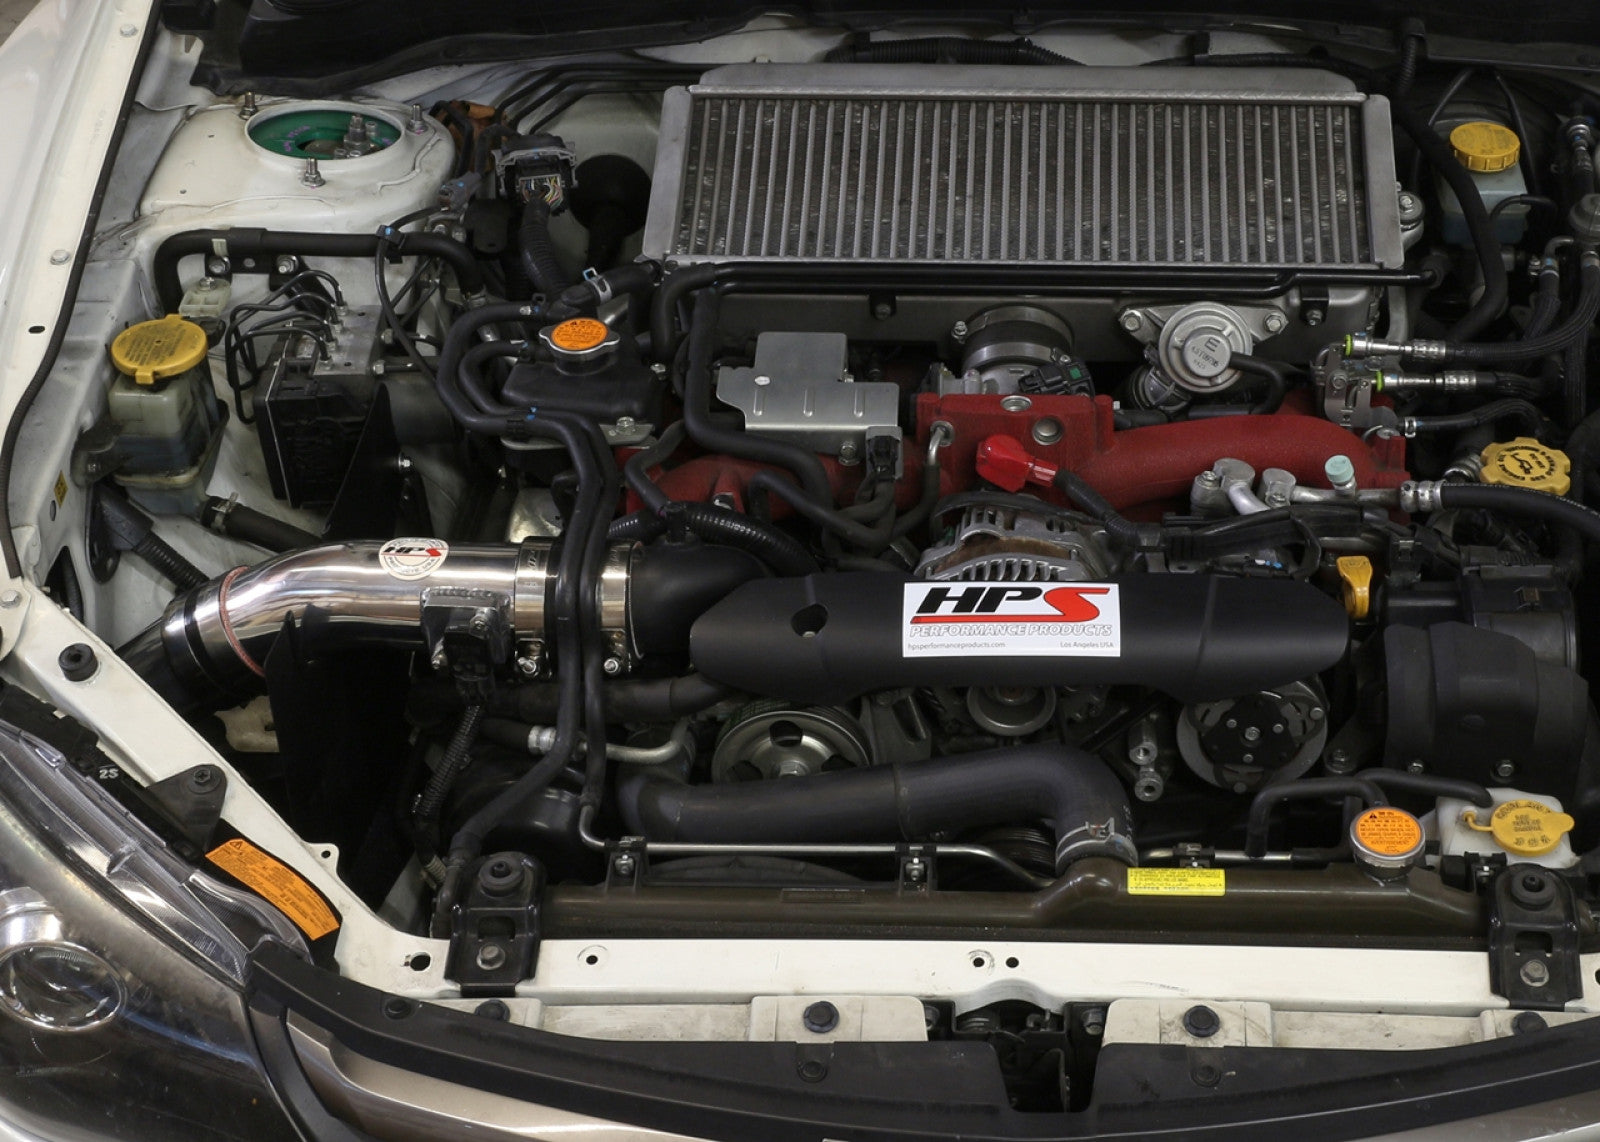 HPS Performance Polish Cold Air Intake Kit for 08-14 Subaru WRX STI 2.5L Turbo